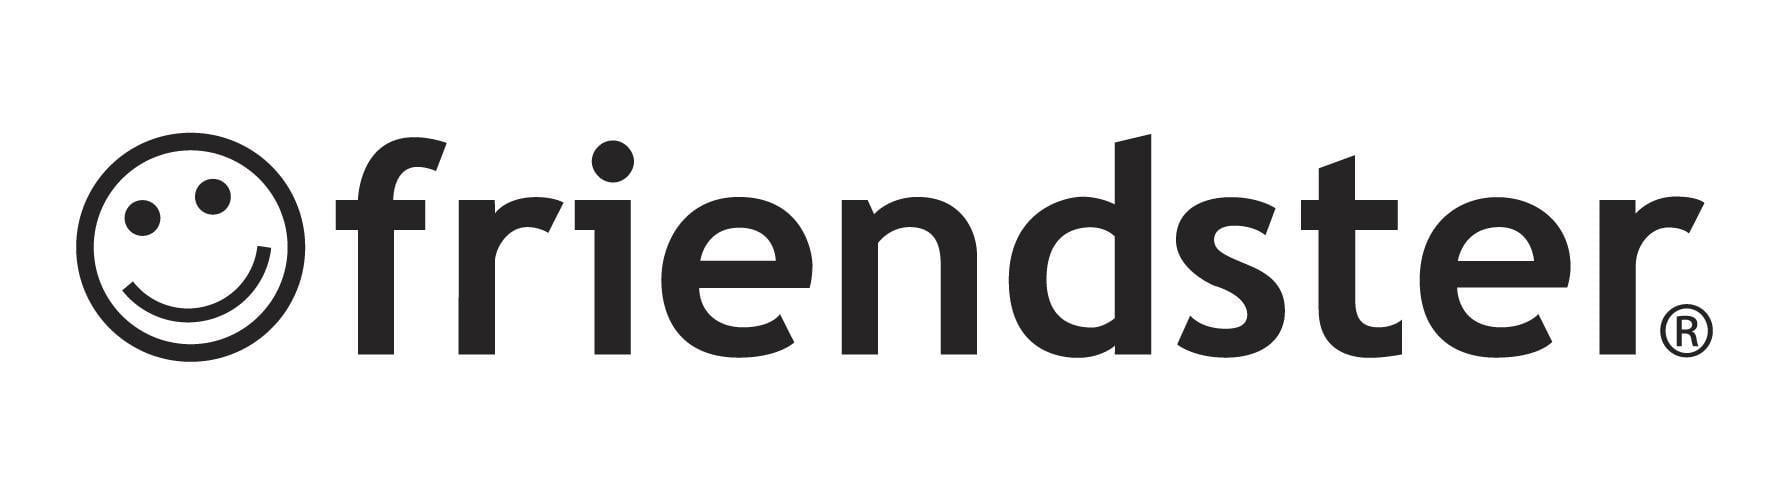 Friendster Logo - Image - Friendster.jpg | Logopedia | FANDOM powered by Wikia